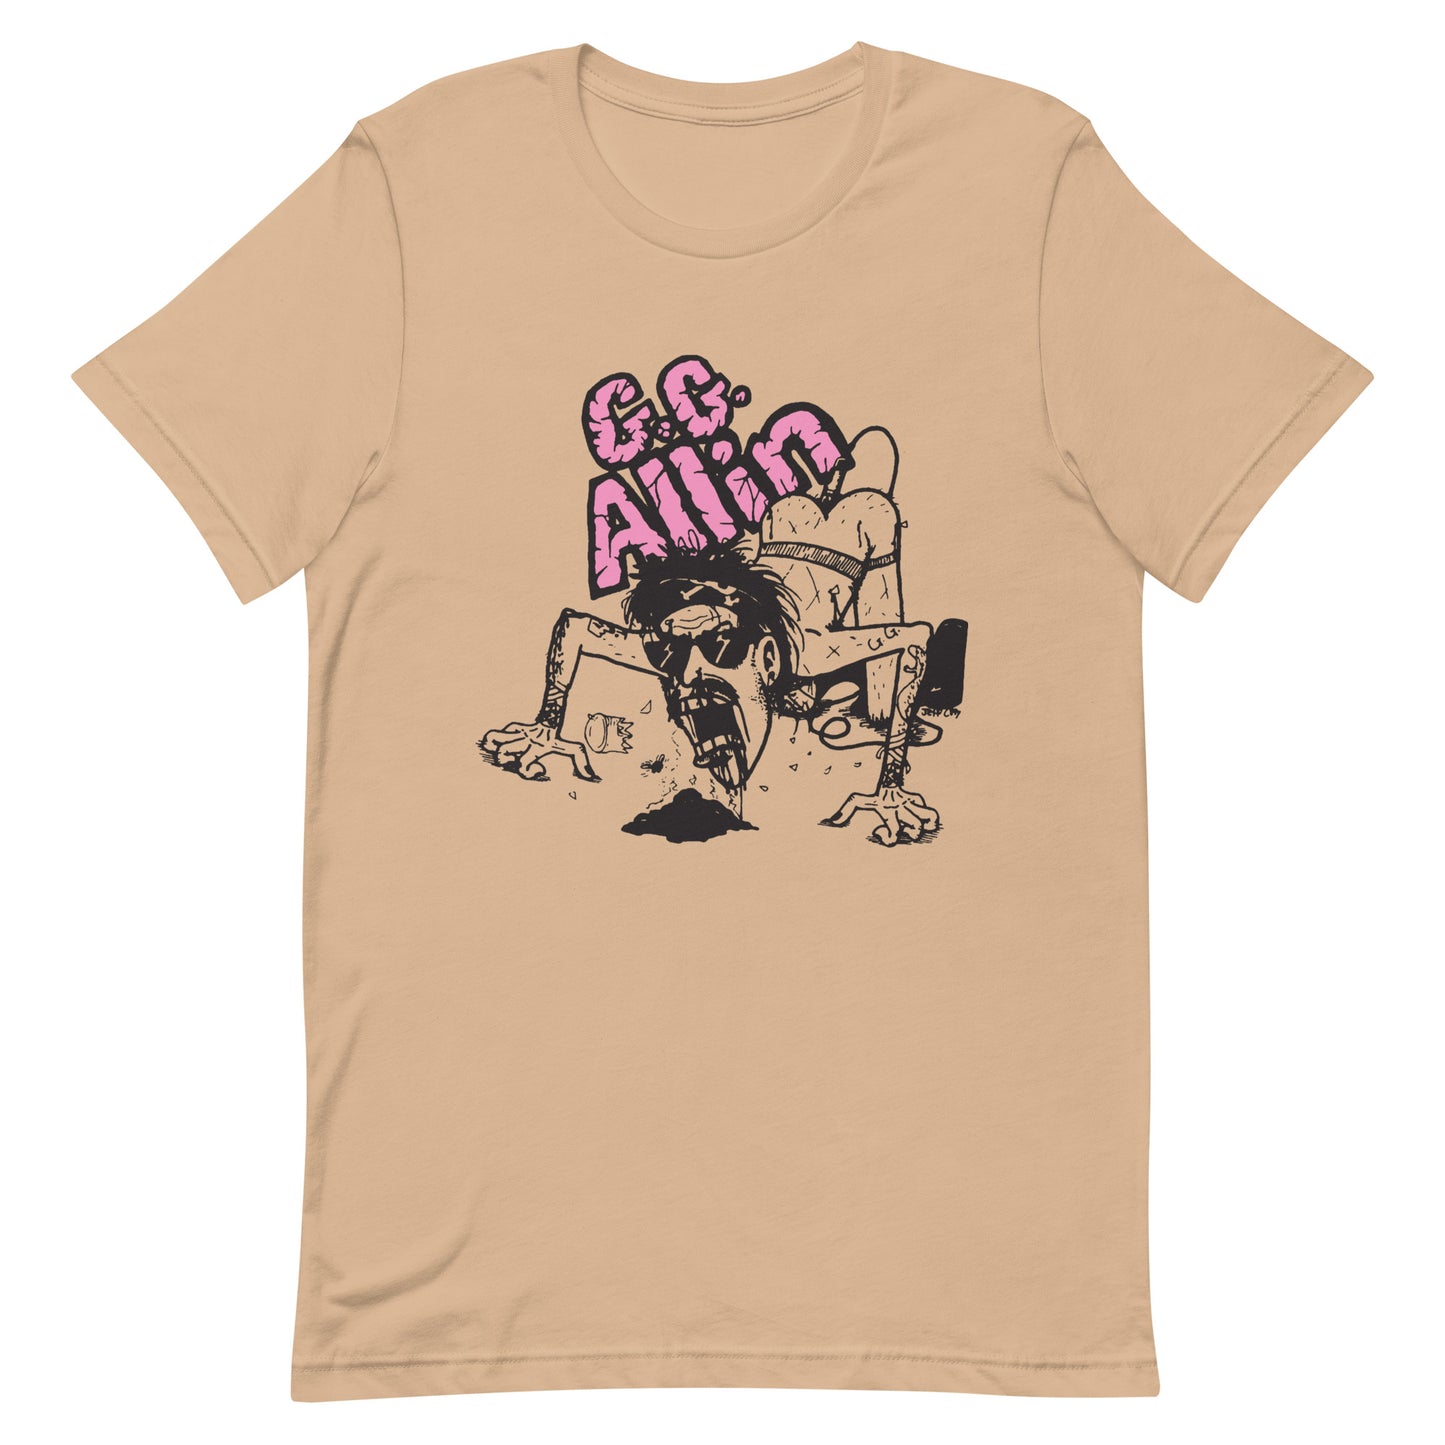 GG Allin - Cartoon T-Shirt